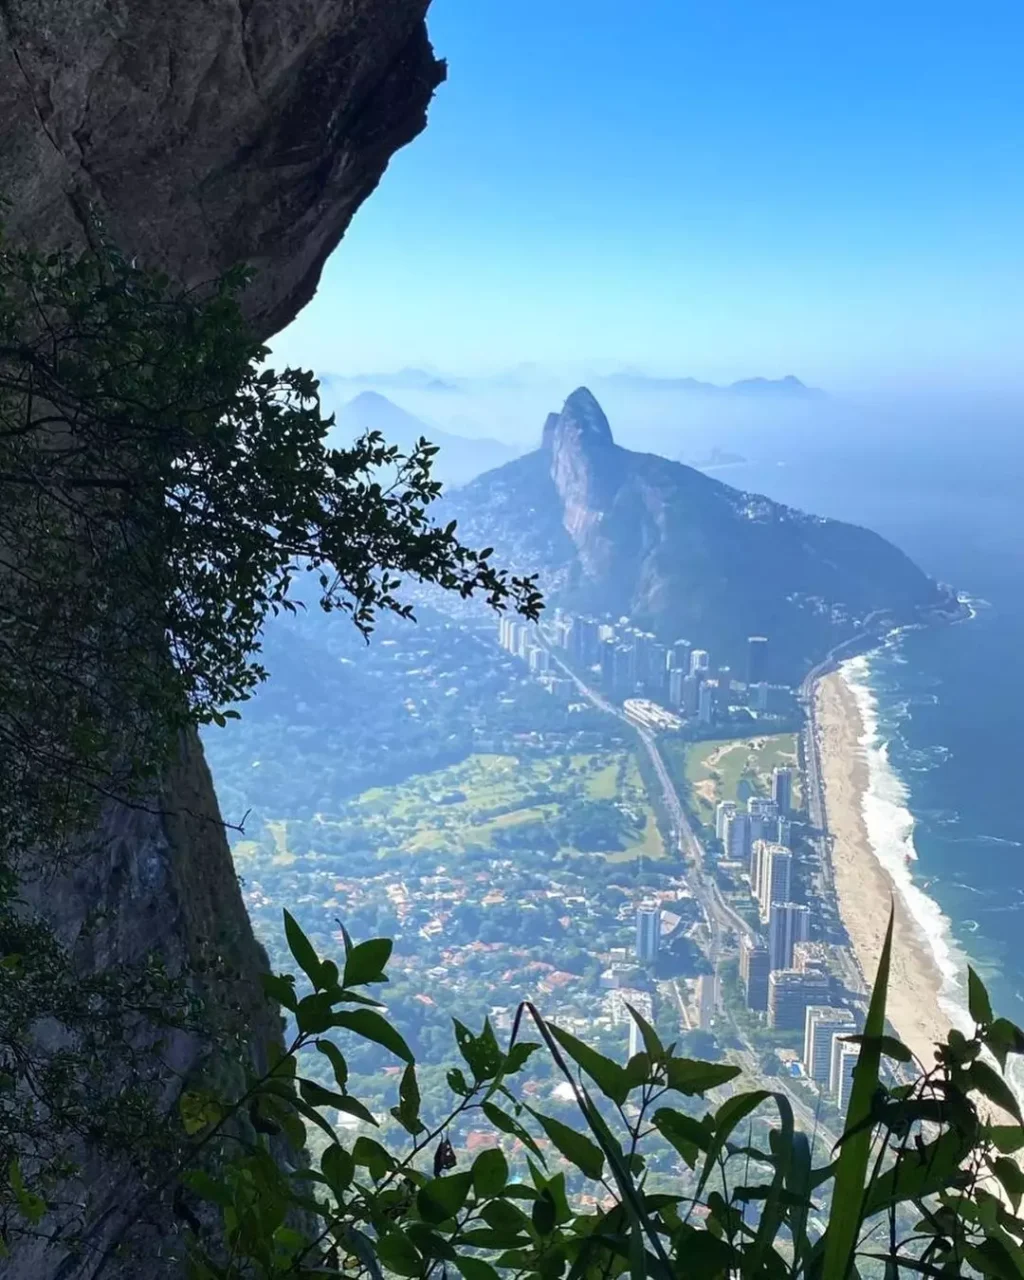 As Melhores trilhas em São Paulo e Rio de Janeiro
Fotos no Centro do Rio de Janeiro